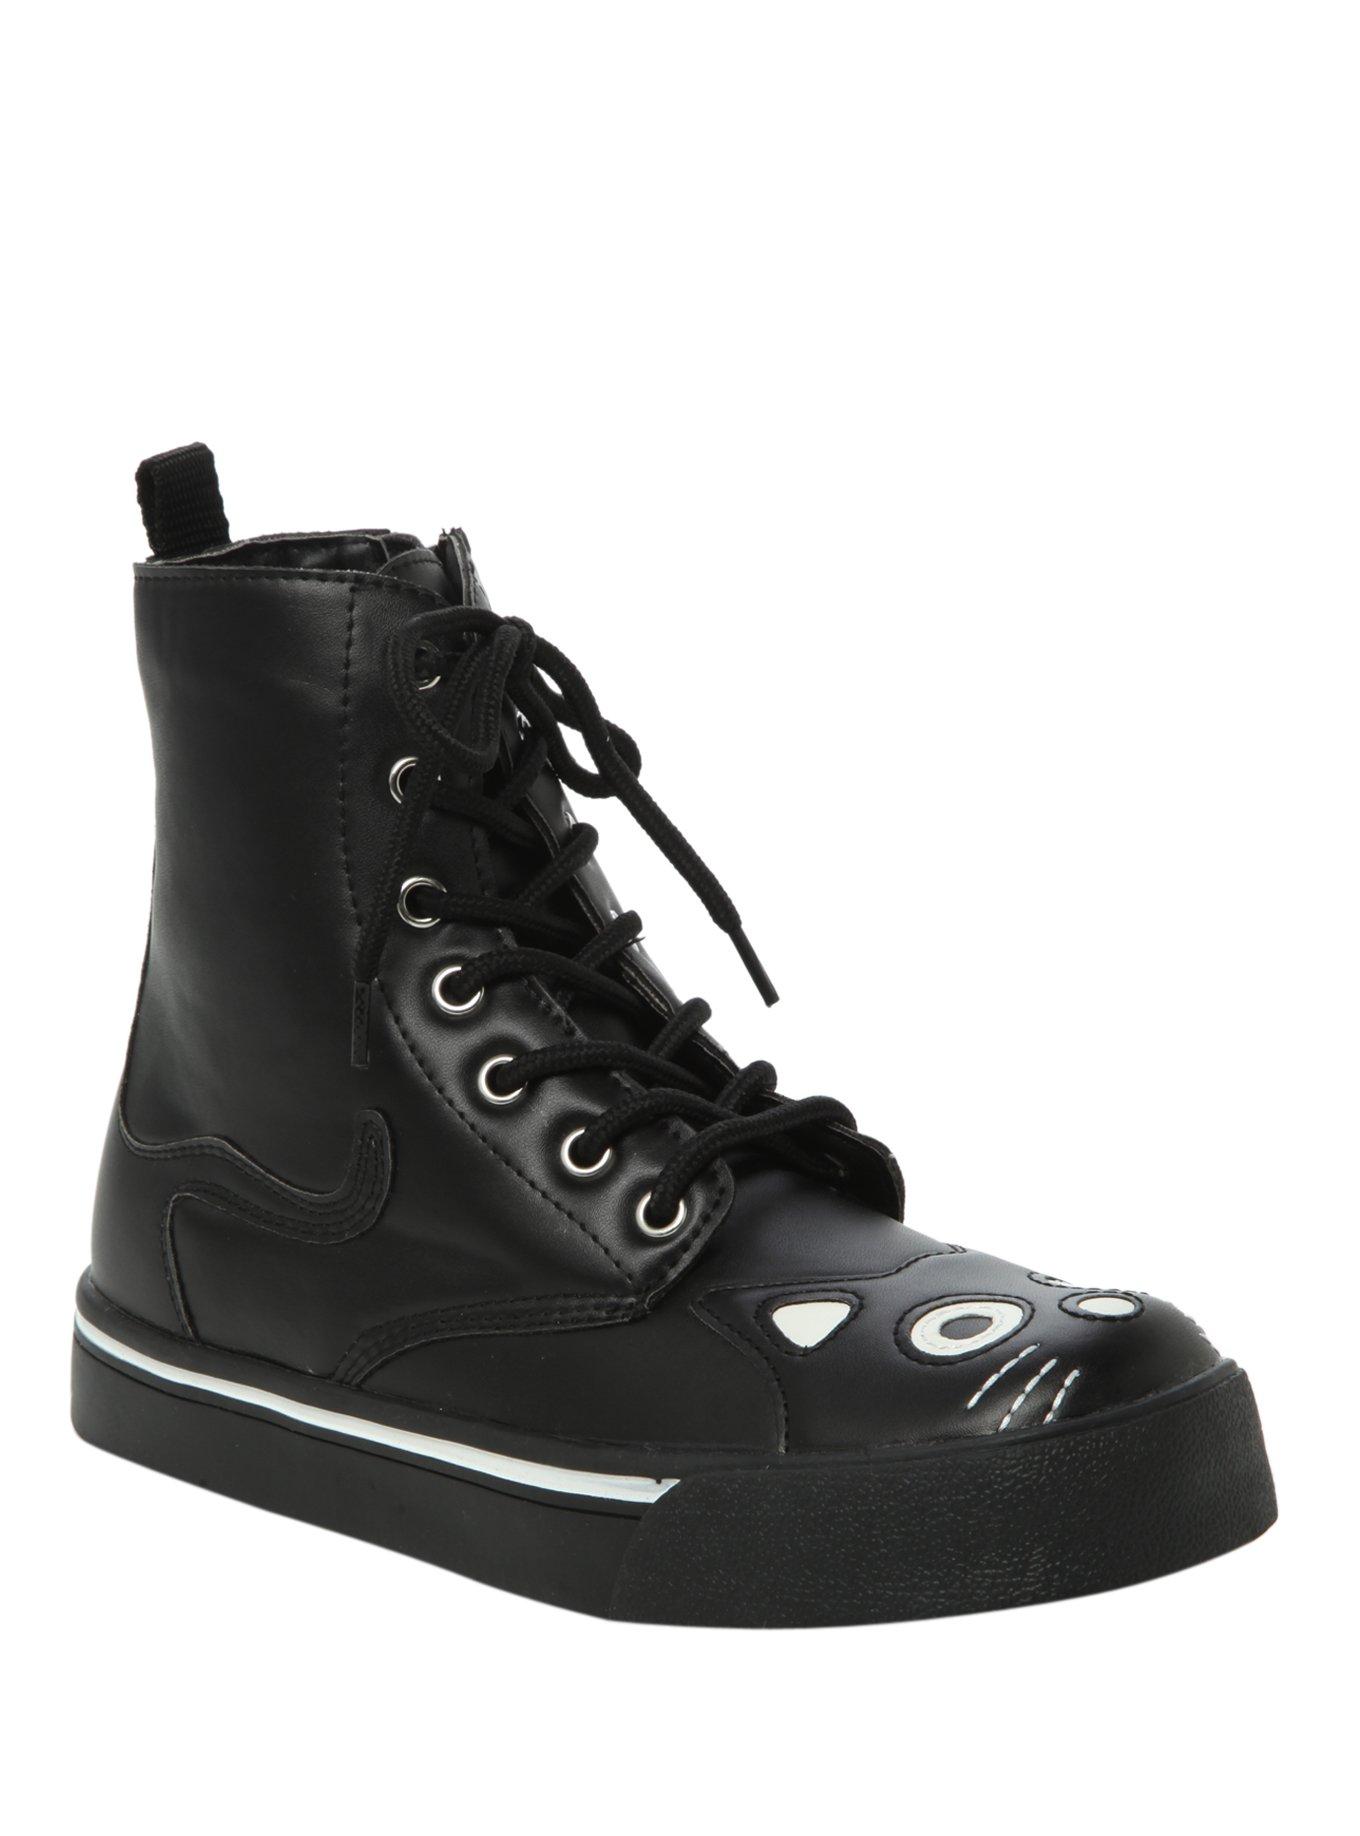 T.U.K. Black Kitty Sneaker Boots, BLACK, hi-res